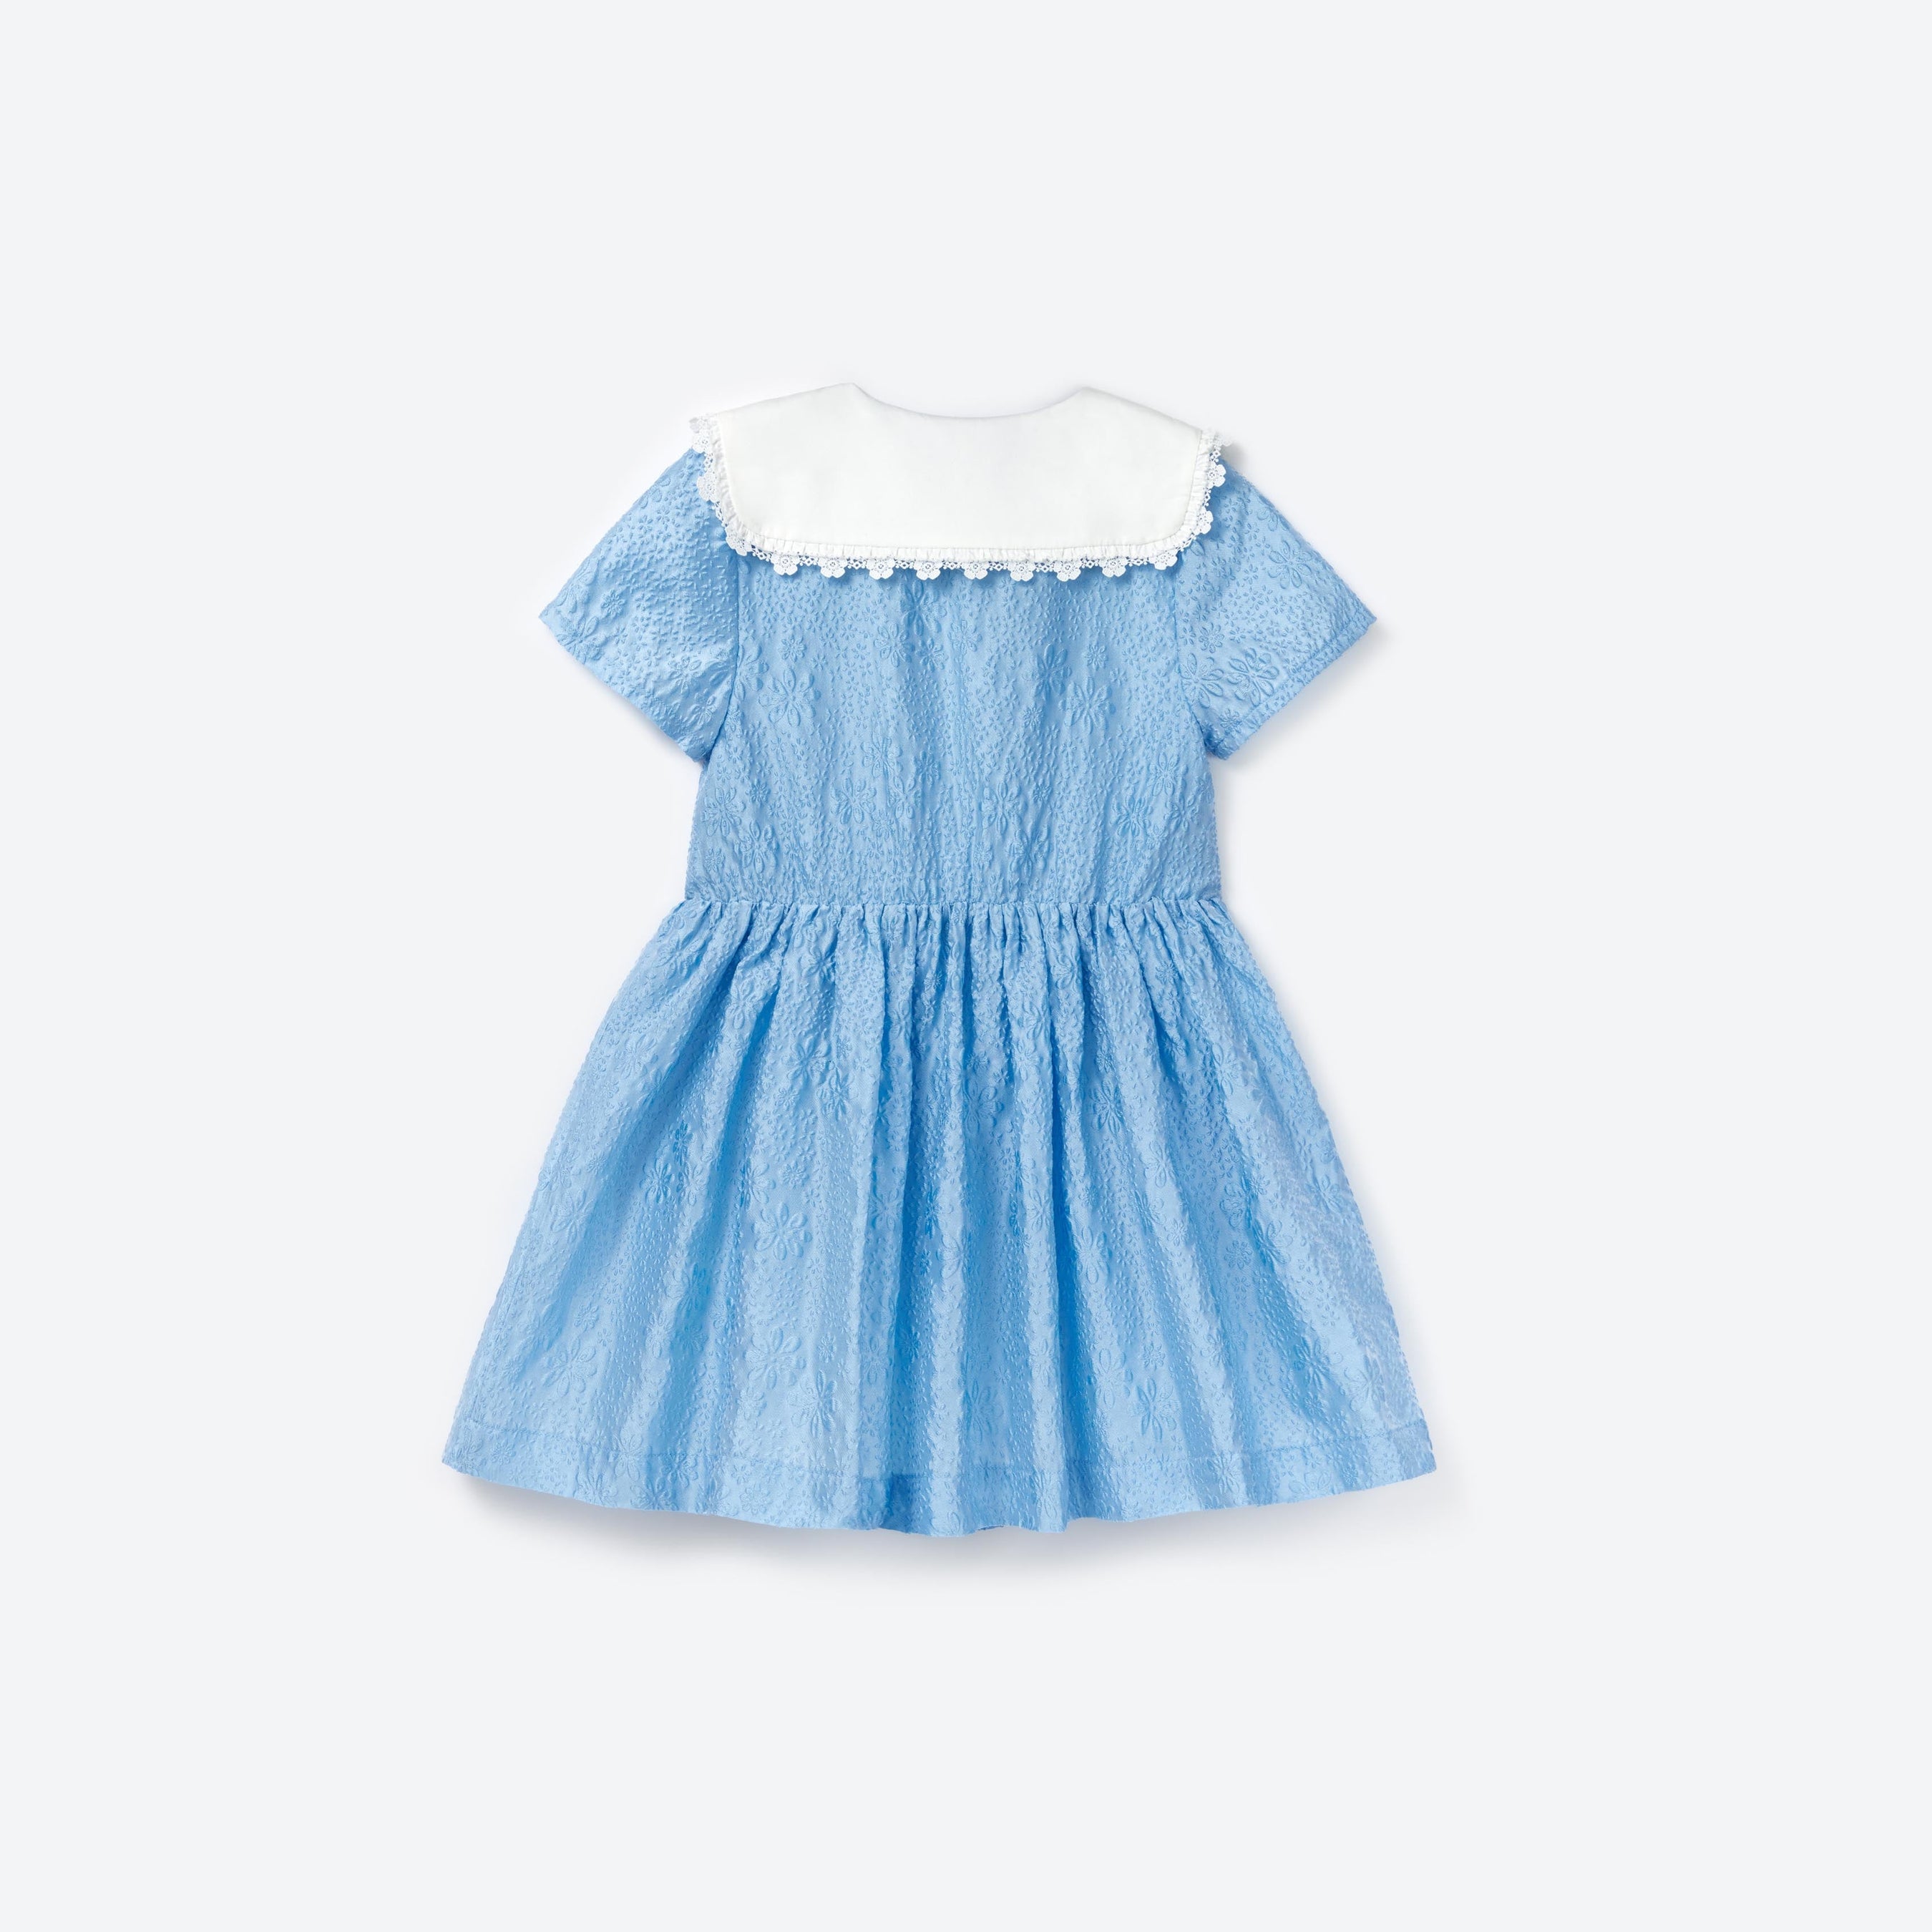 Blue Textured Cotton Dress